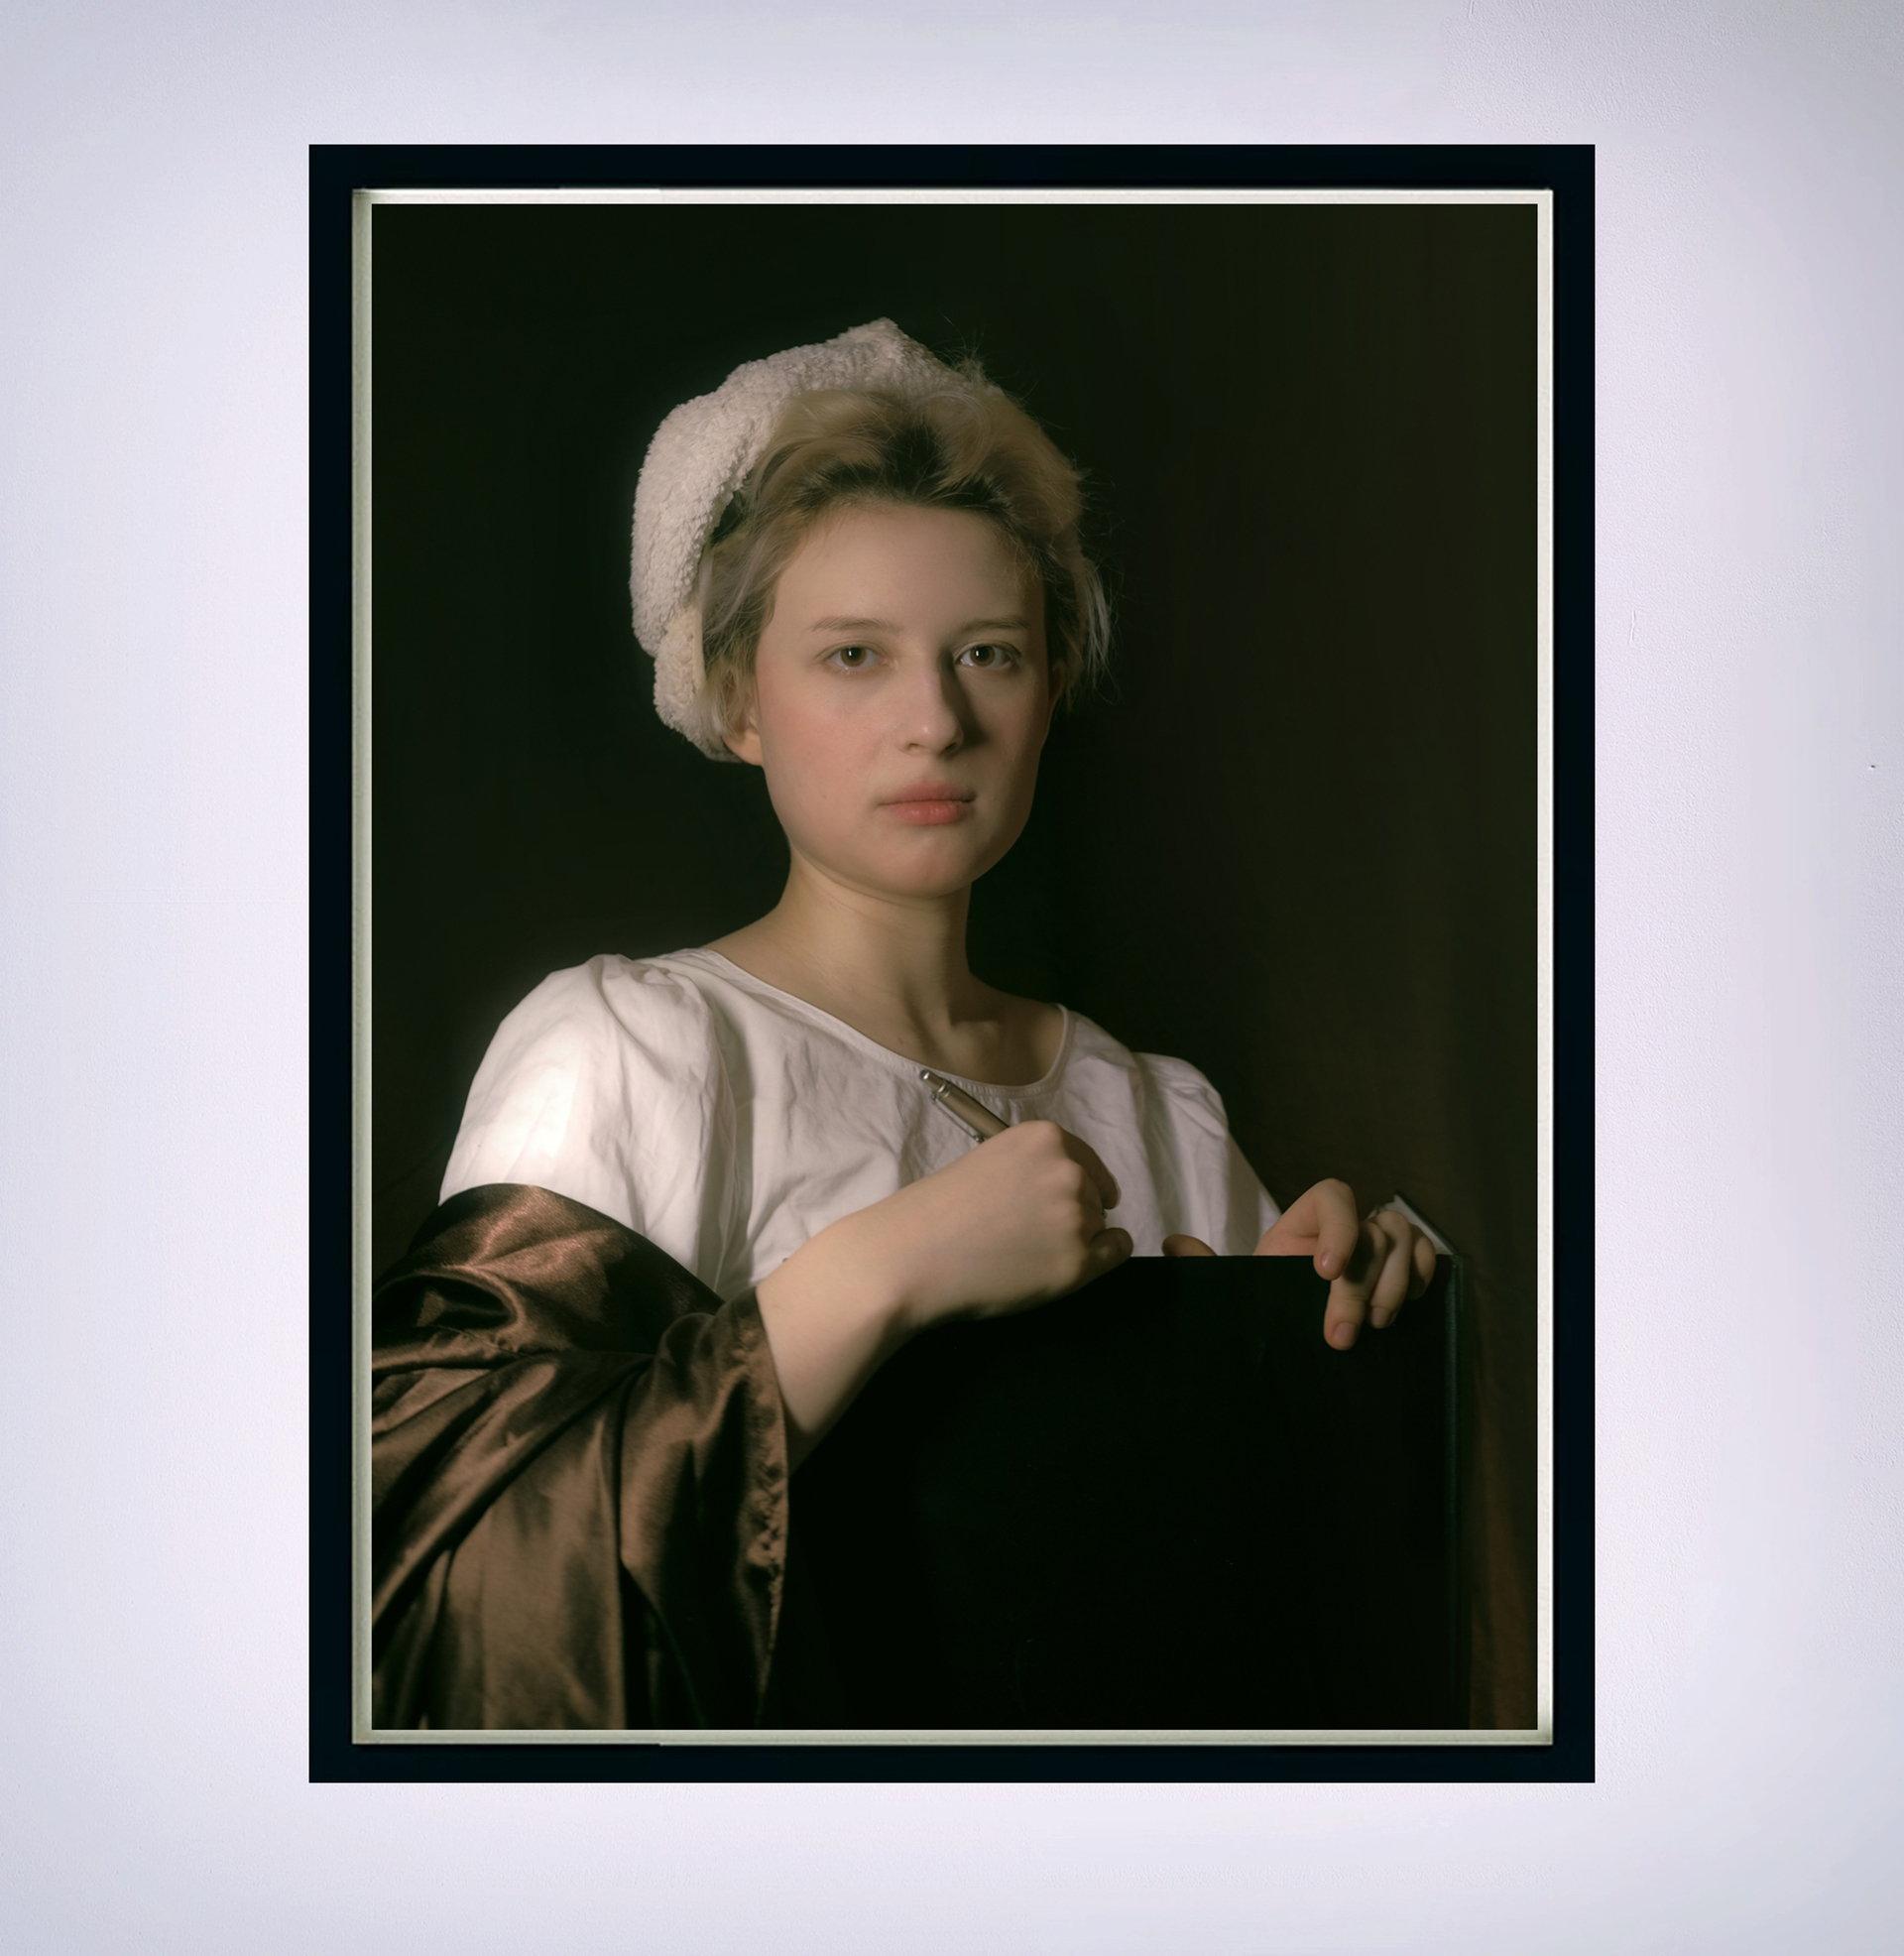 Fotografia kolorowa przedstawiająca portret autorki pracy, stylizowany na XVIII-wieczne dzieło malarskie. 